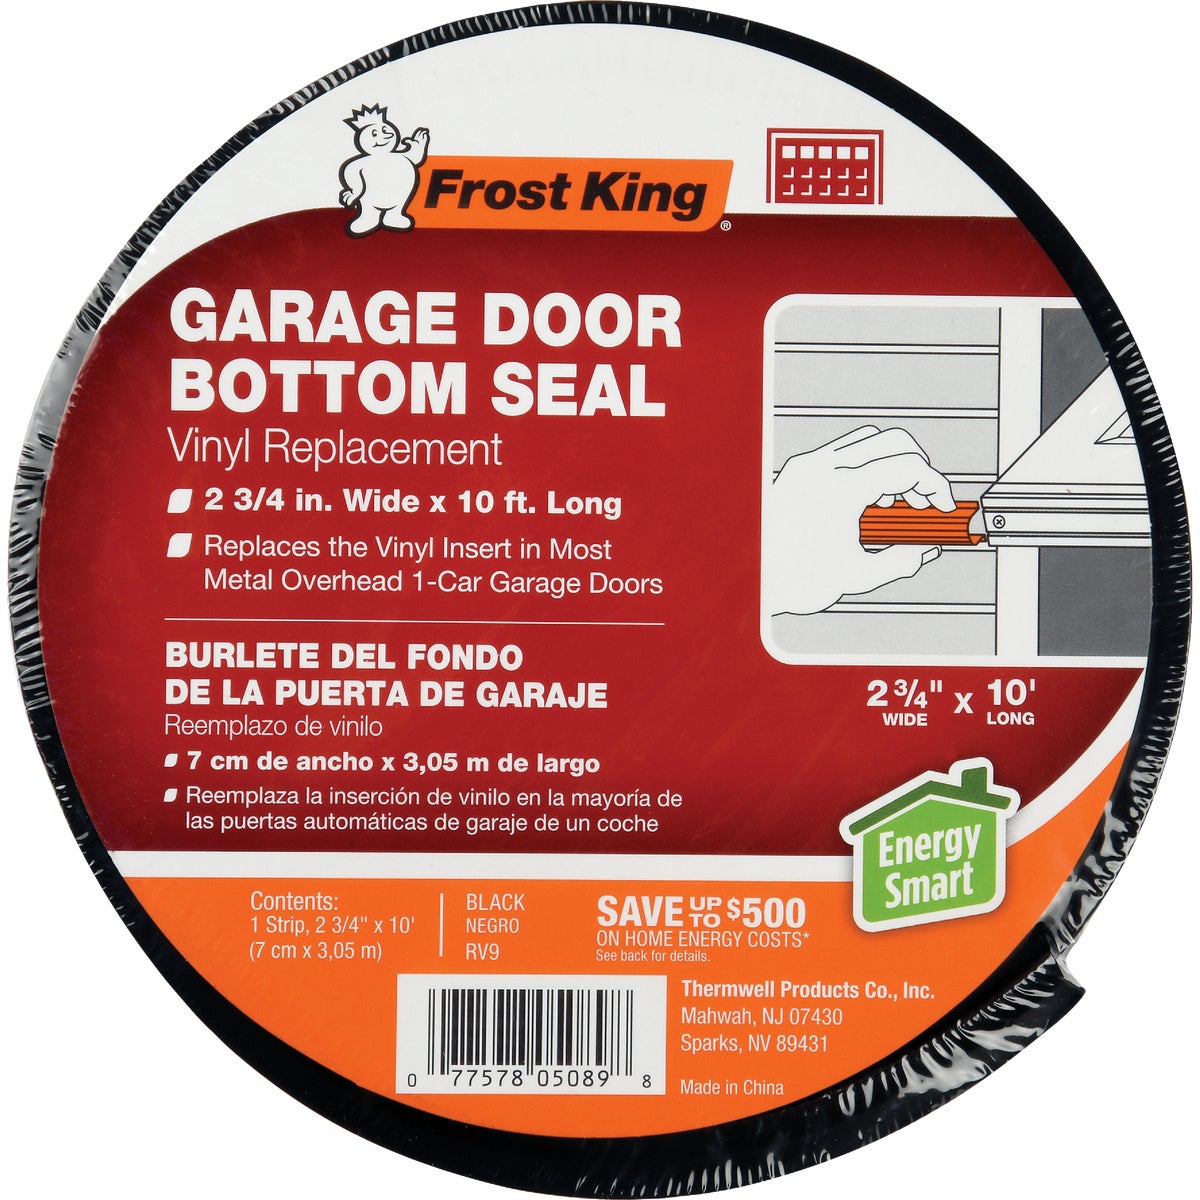 Item 269034, Frost King's Vinyl Garage Door Bottom Replacement Seal is an essential 